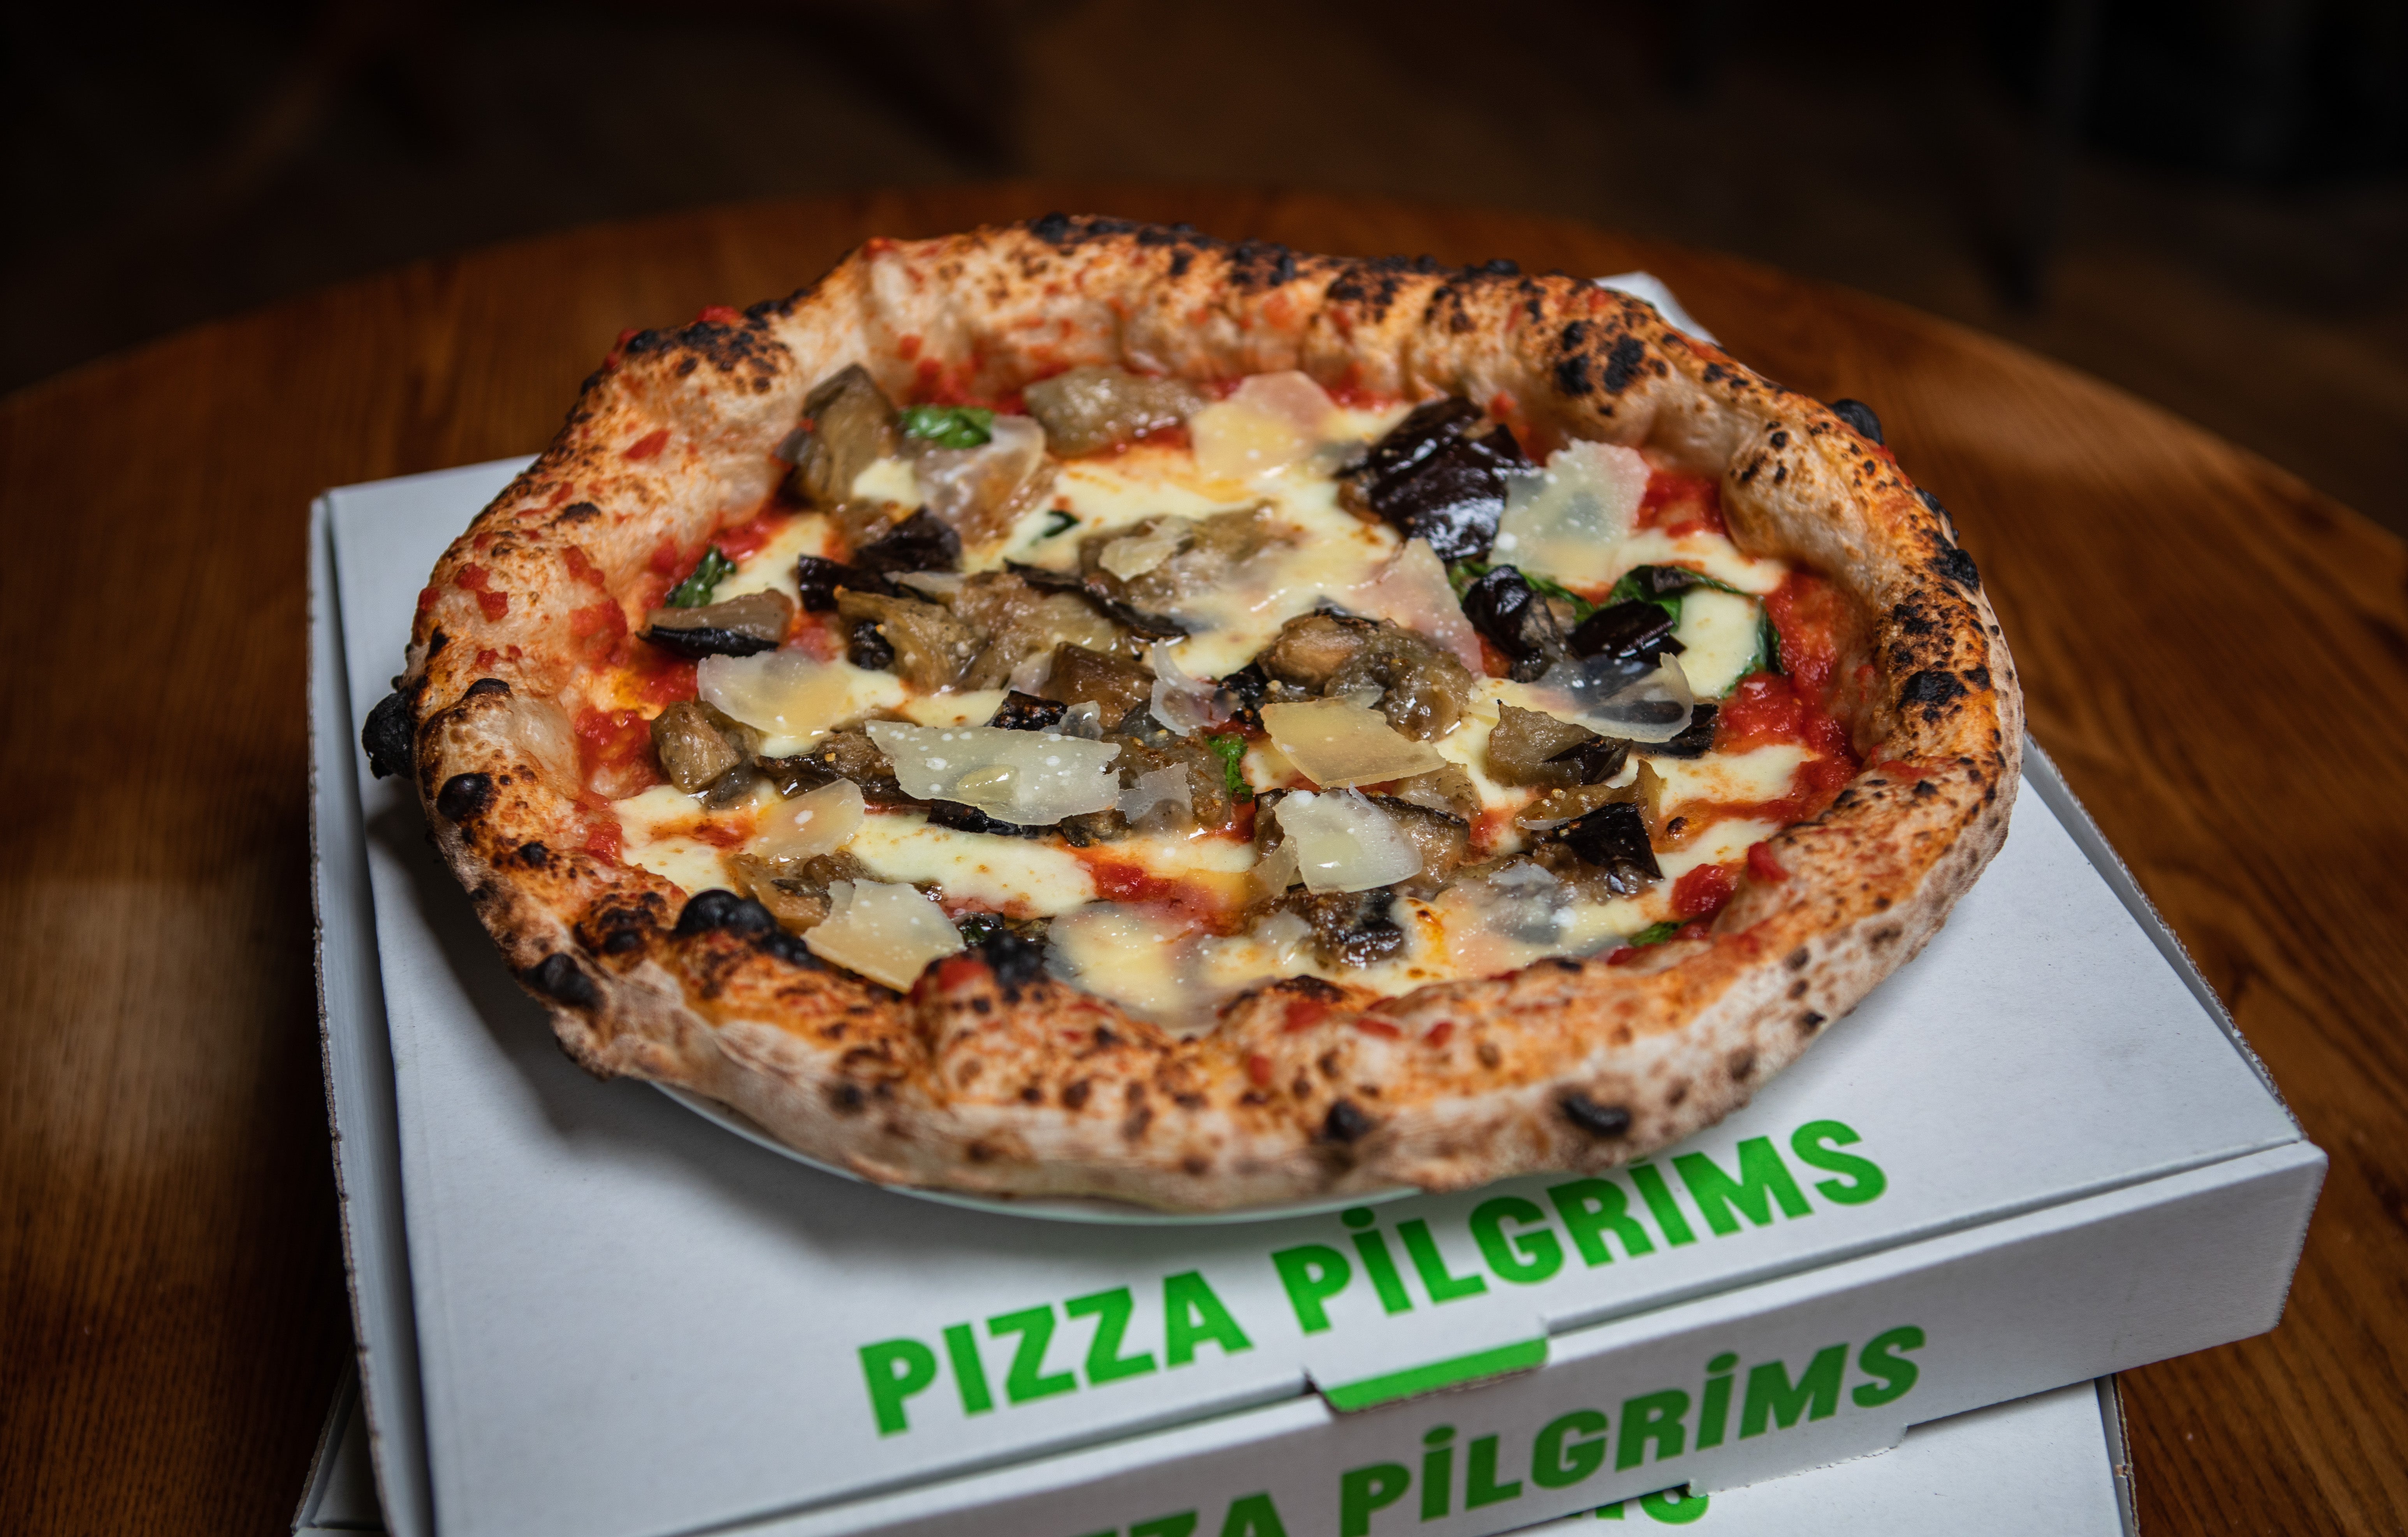 Pizza Pilgrims